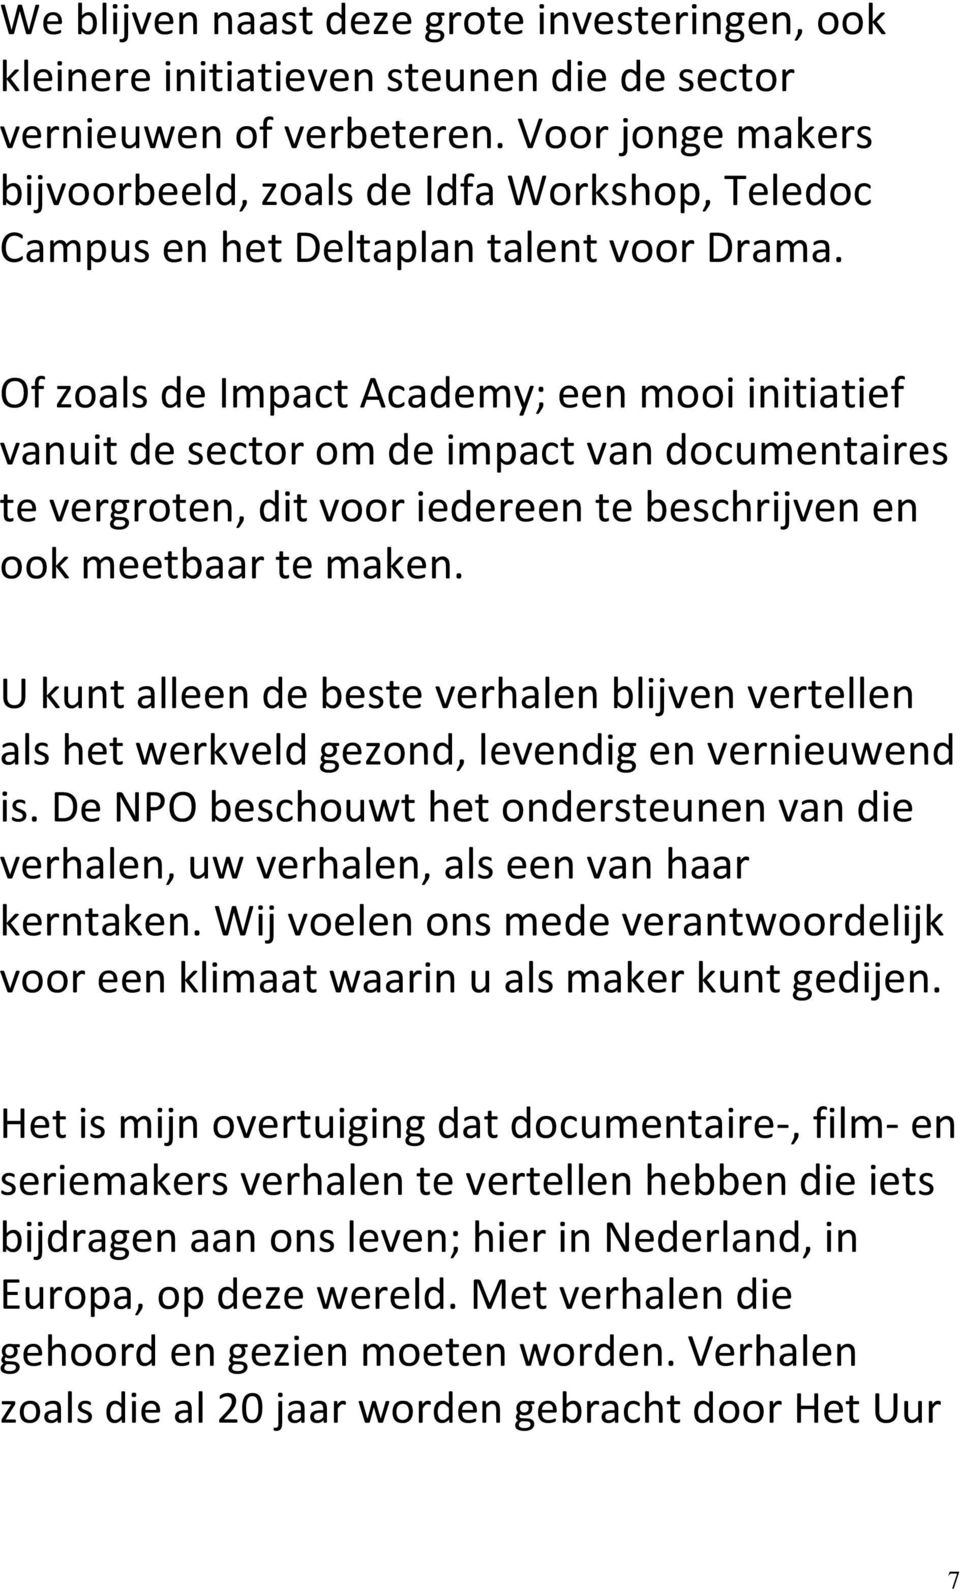 Of zoals de Impact Academy; een mooi initiatief vanuit de sector om de impact van documentaires te vergroten, dit voor iedereen te beschrijven en ook meetbaar te maken.